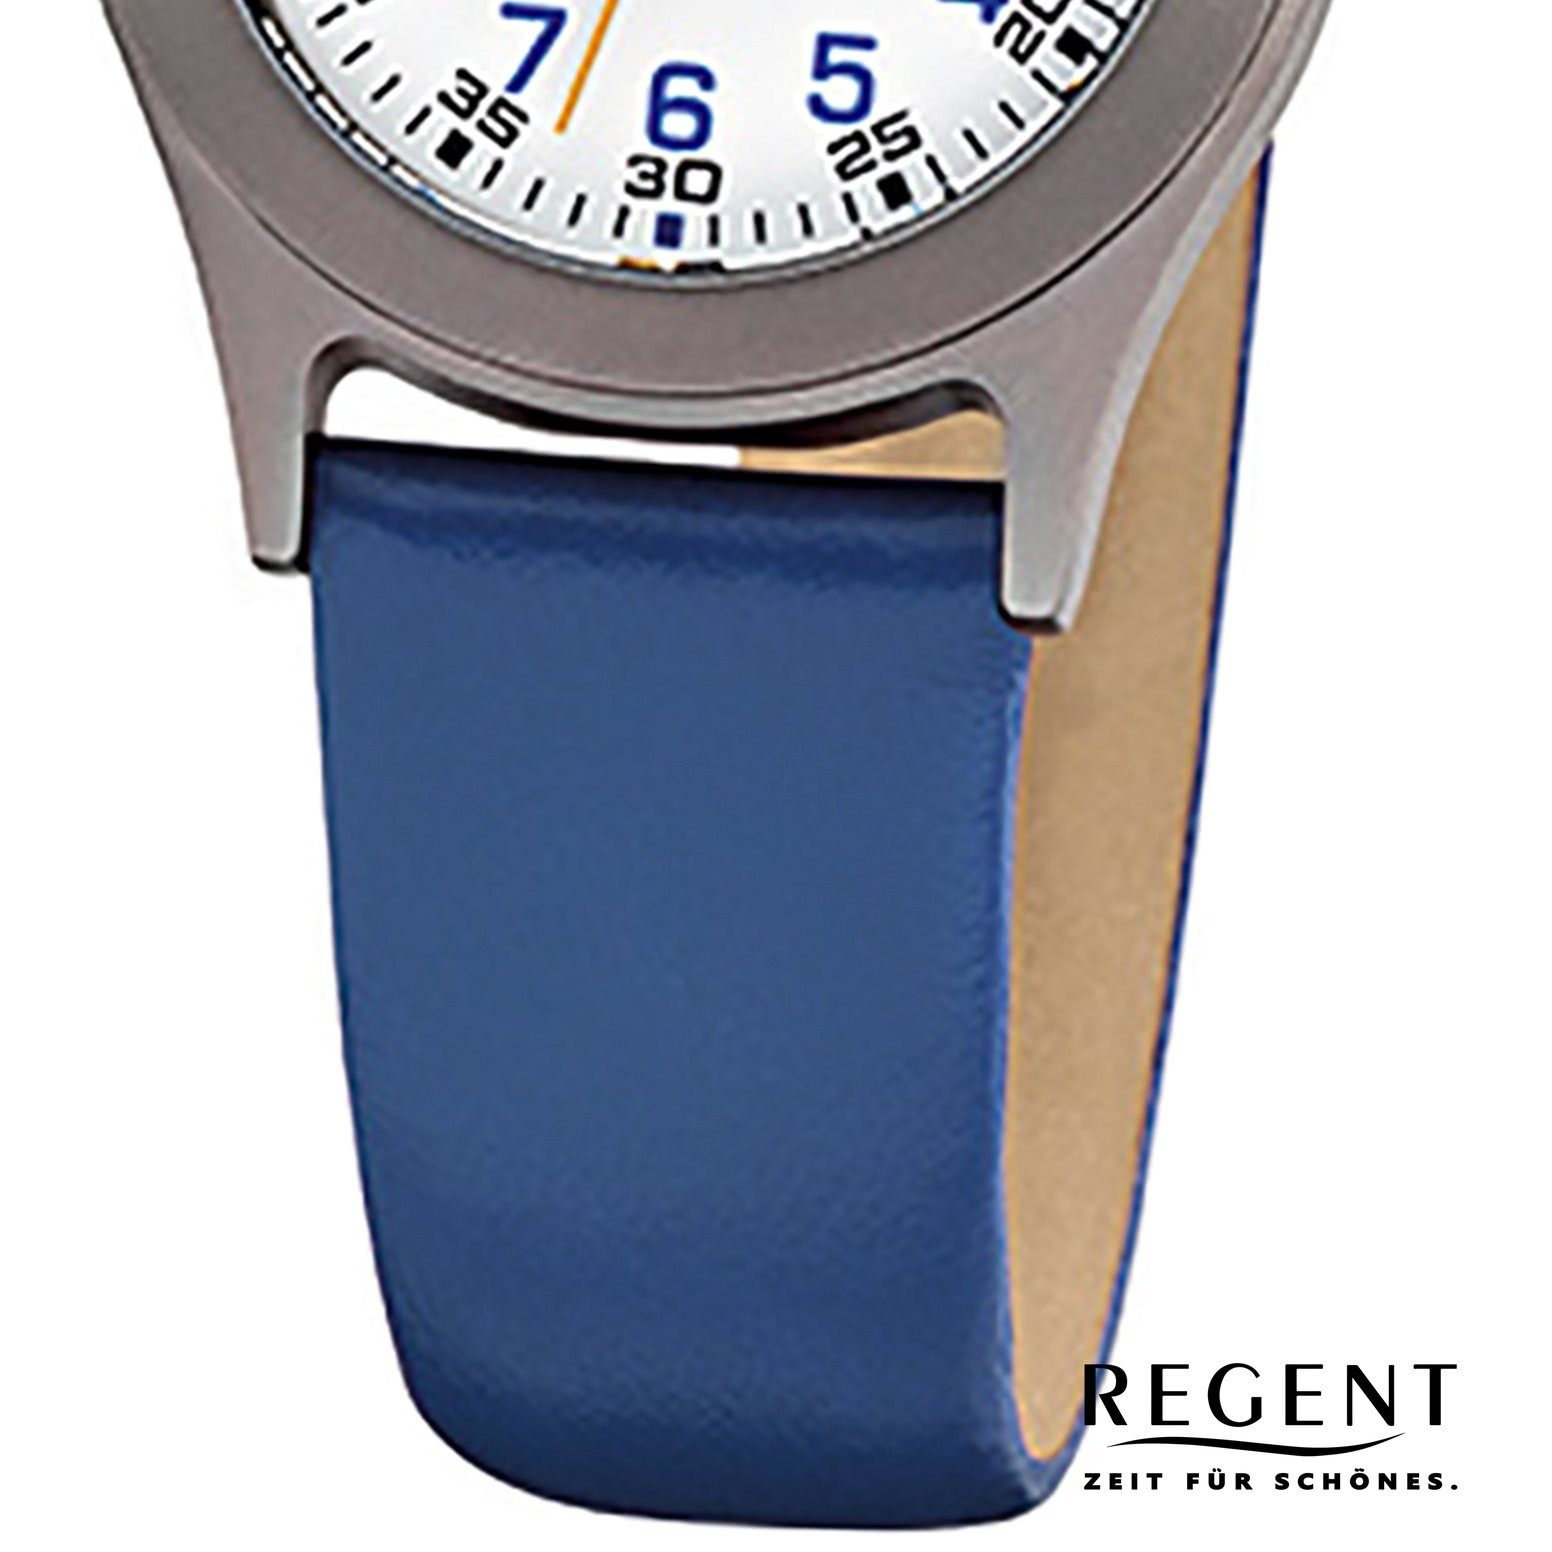 Regent Quarzuhr Regent blau Lederarmband rund, F-947, Kinder-Armbanduhr (ca. klein Armbanduhr 26mm), Kinder Analog